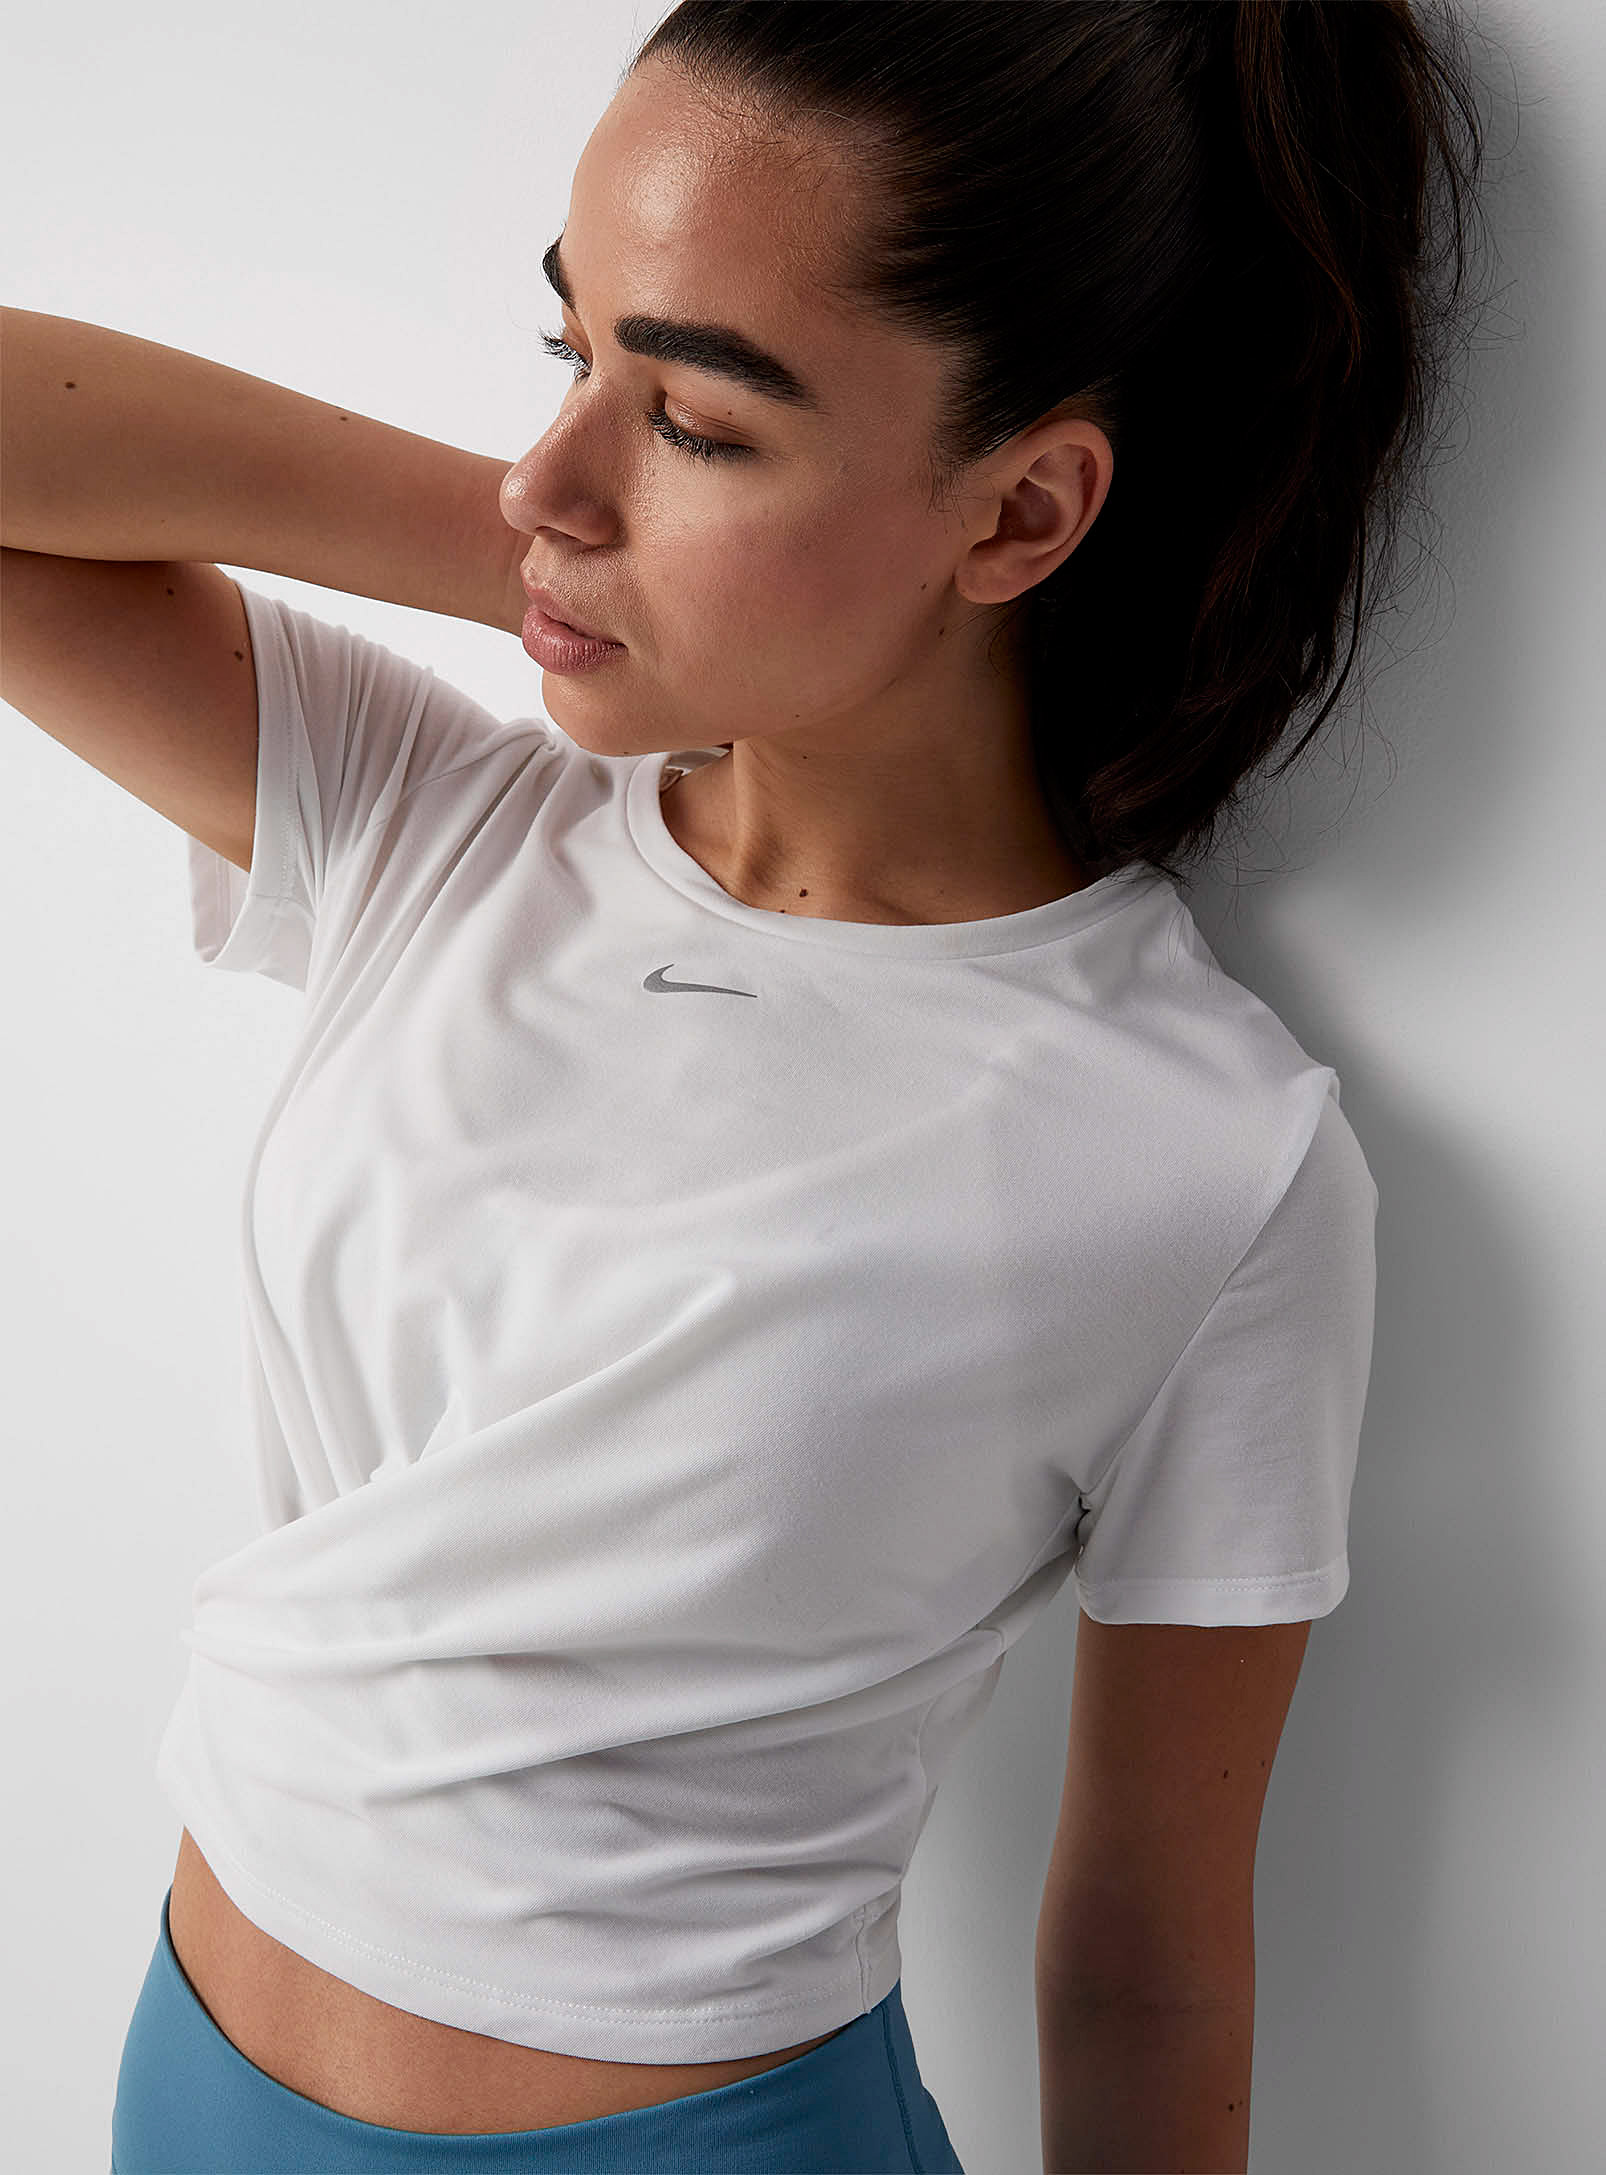 Ongepast schaal Wet en regelgeving Nike Crop T-shirt In White | ModeSens